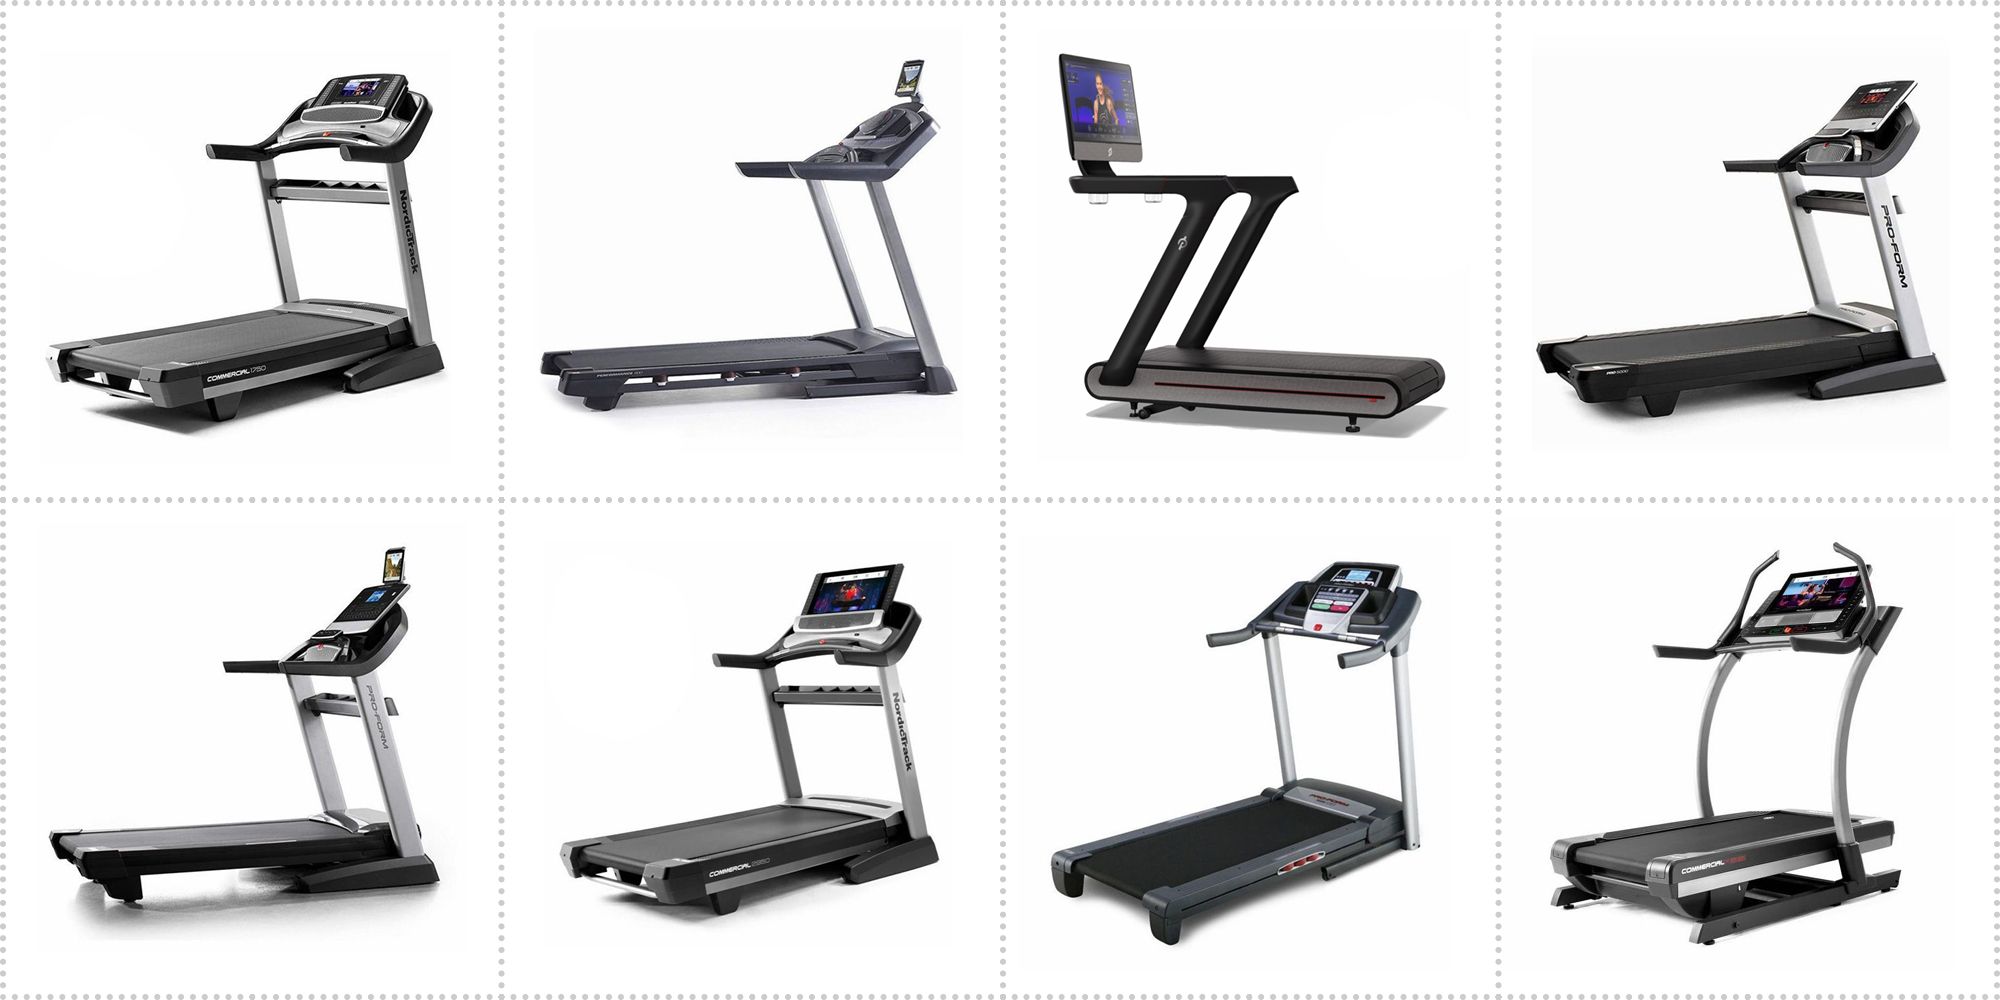 cheap good treadmill to buy